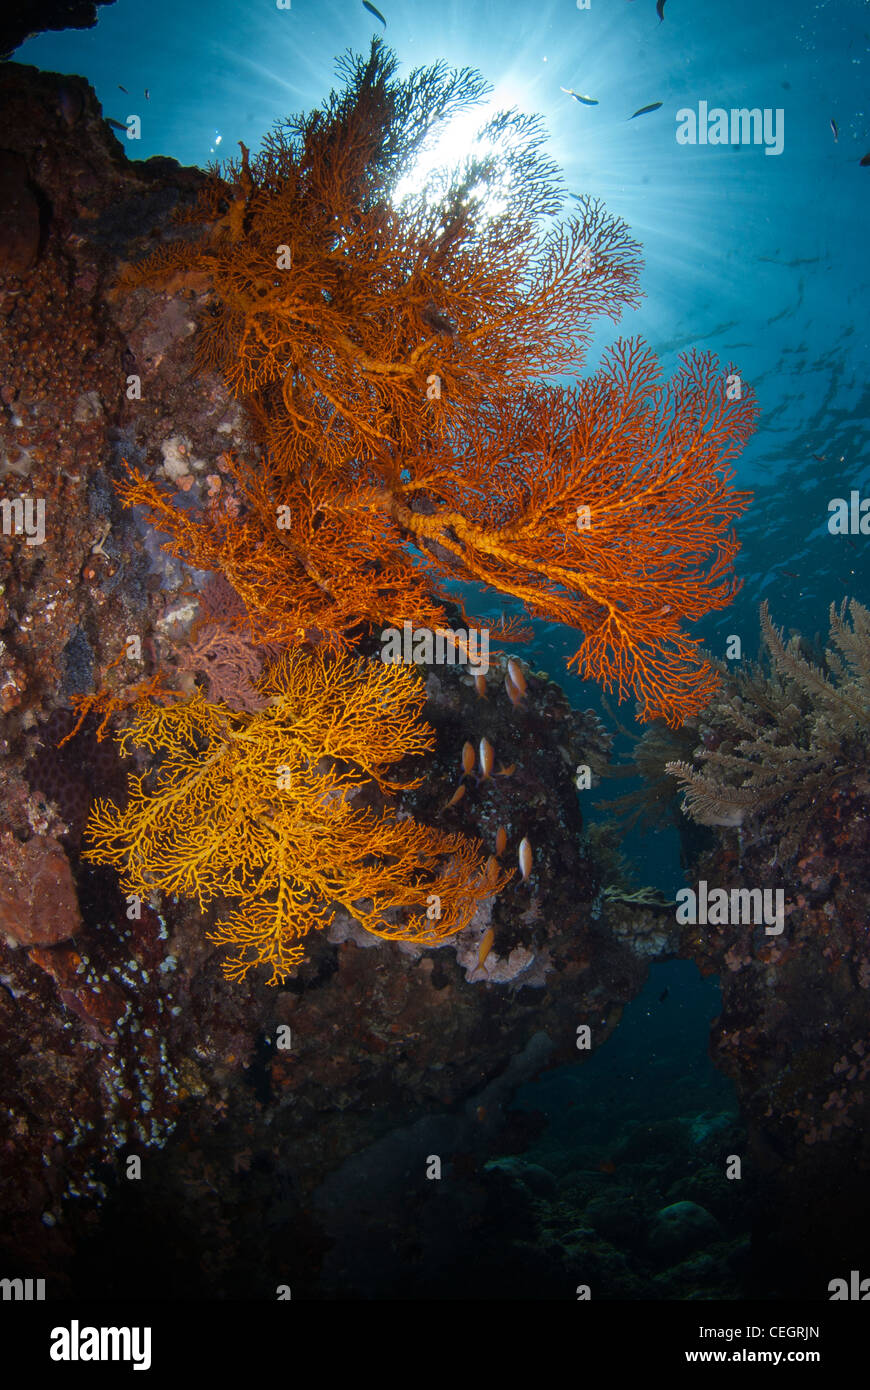 Eine unberührte Korallenriff mit Gorgonien (Gorgonien) in Indonesien. Stockfoto